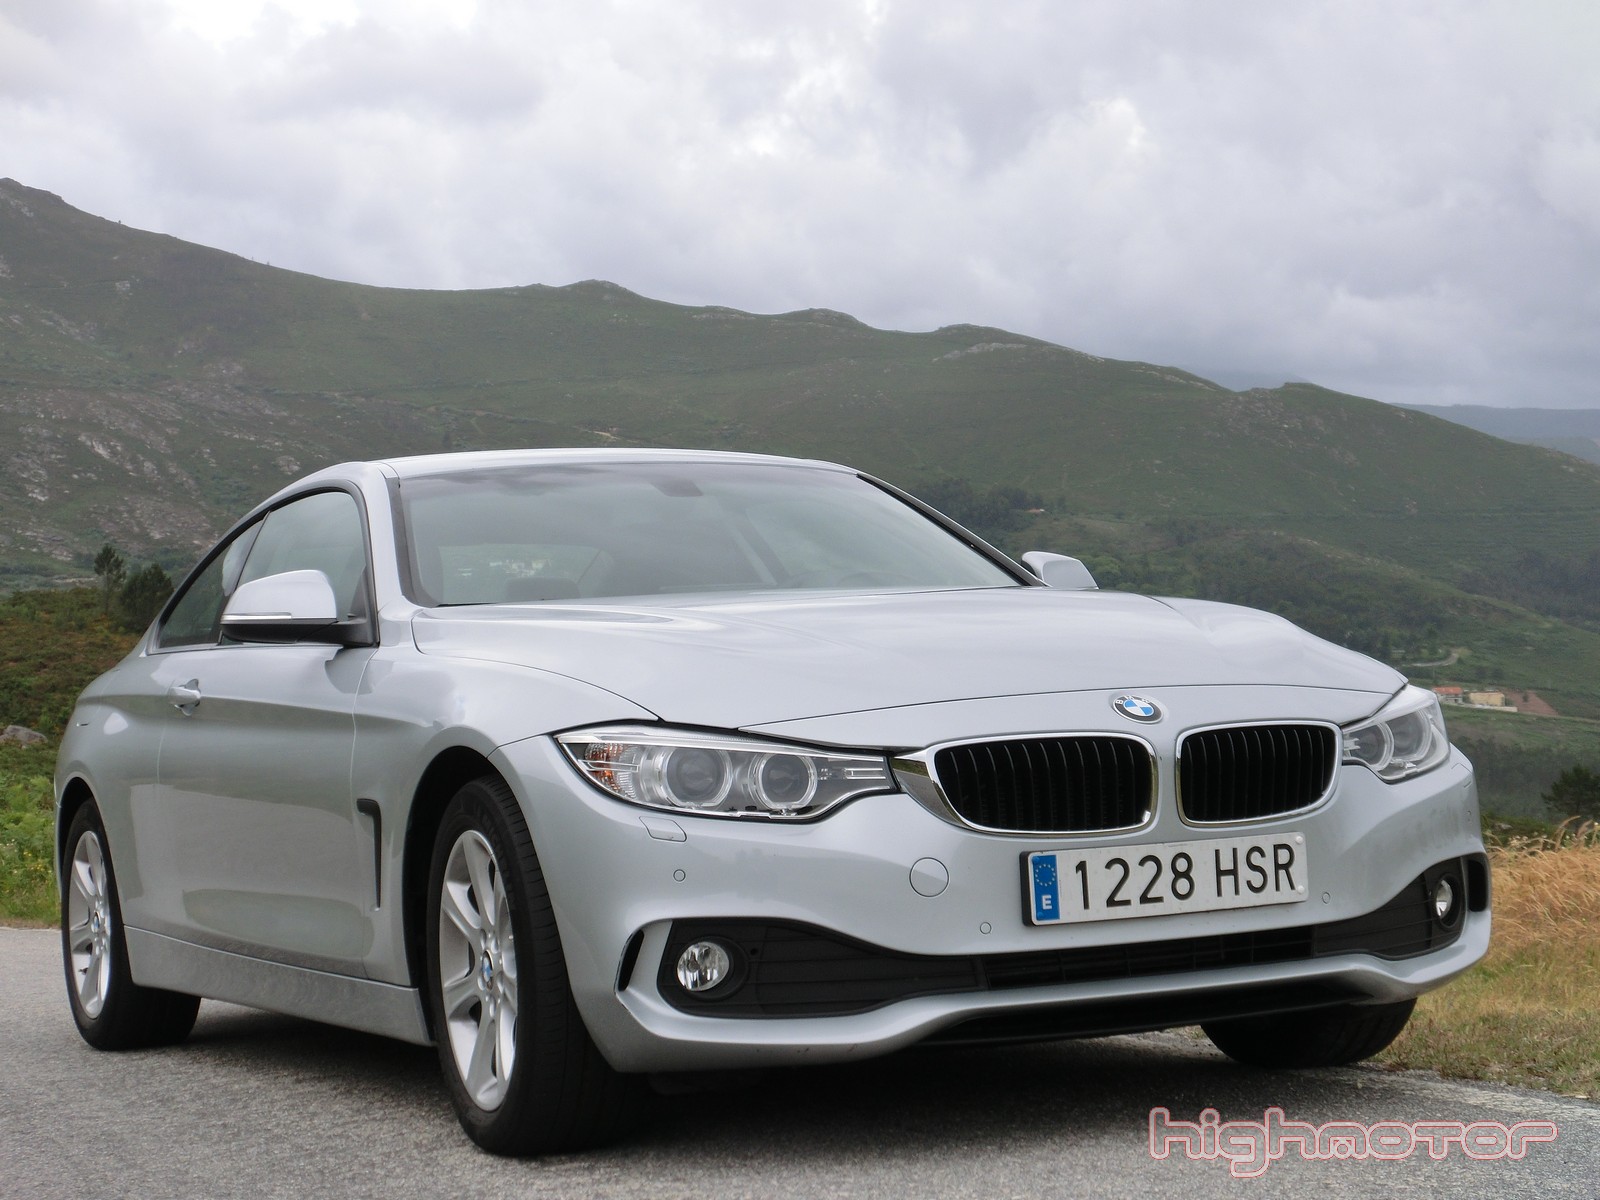 BMW 420d Coupé, prueba (Motor, diseño, equipamiento, precio y opinión)